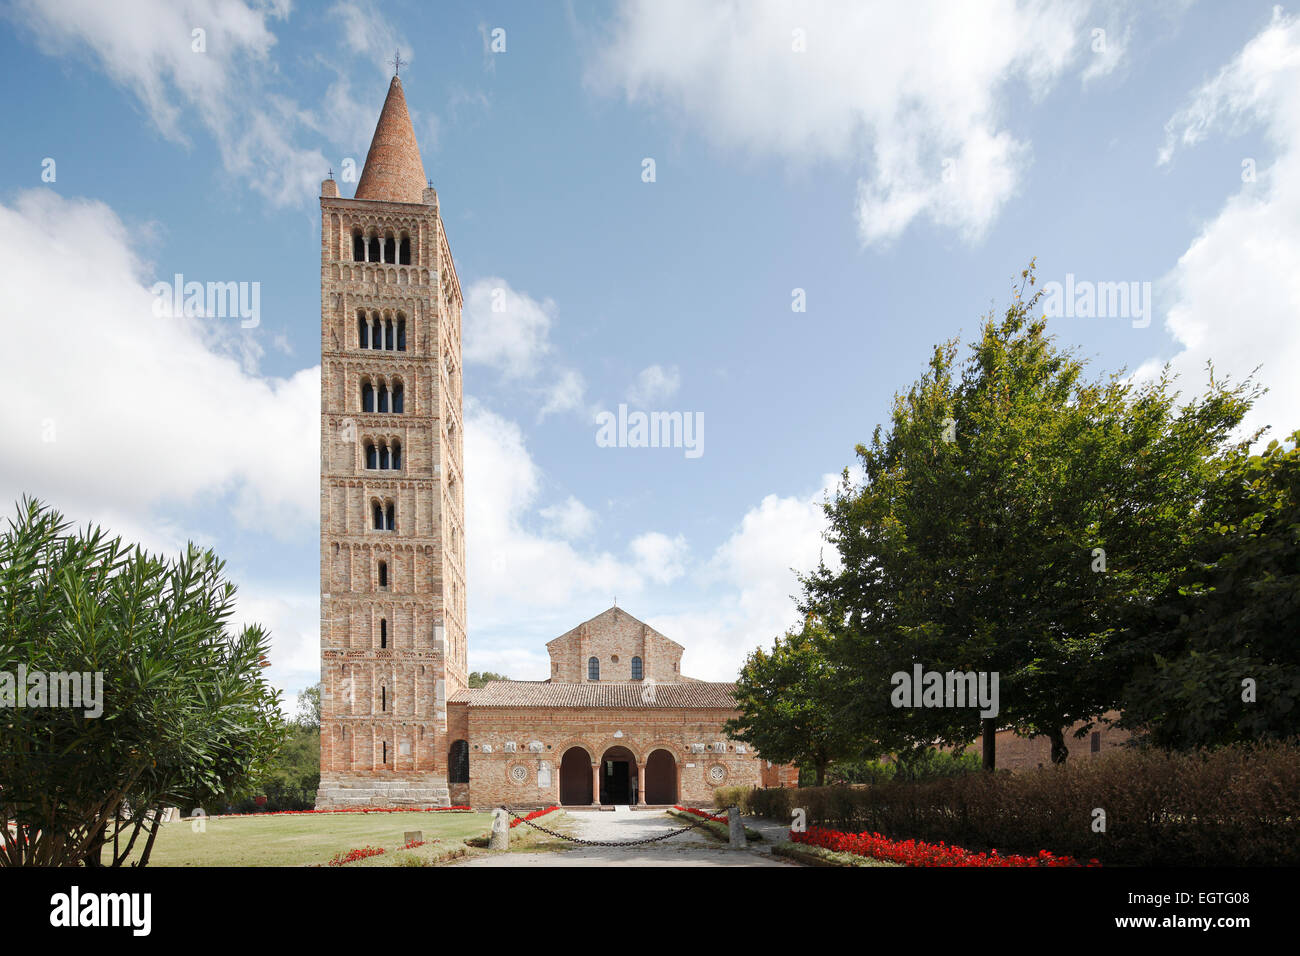 Son église avec clocher, campanile, Abbaye de Pomposa, ancienne abbaye bénédictine, Pomposa, Emilia-Romagna, Italie Banque D'Images